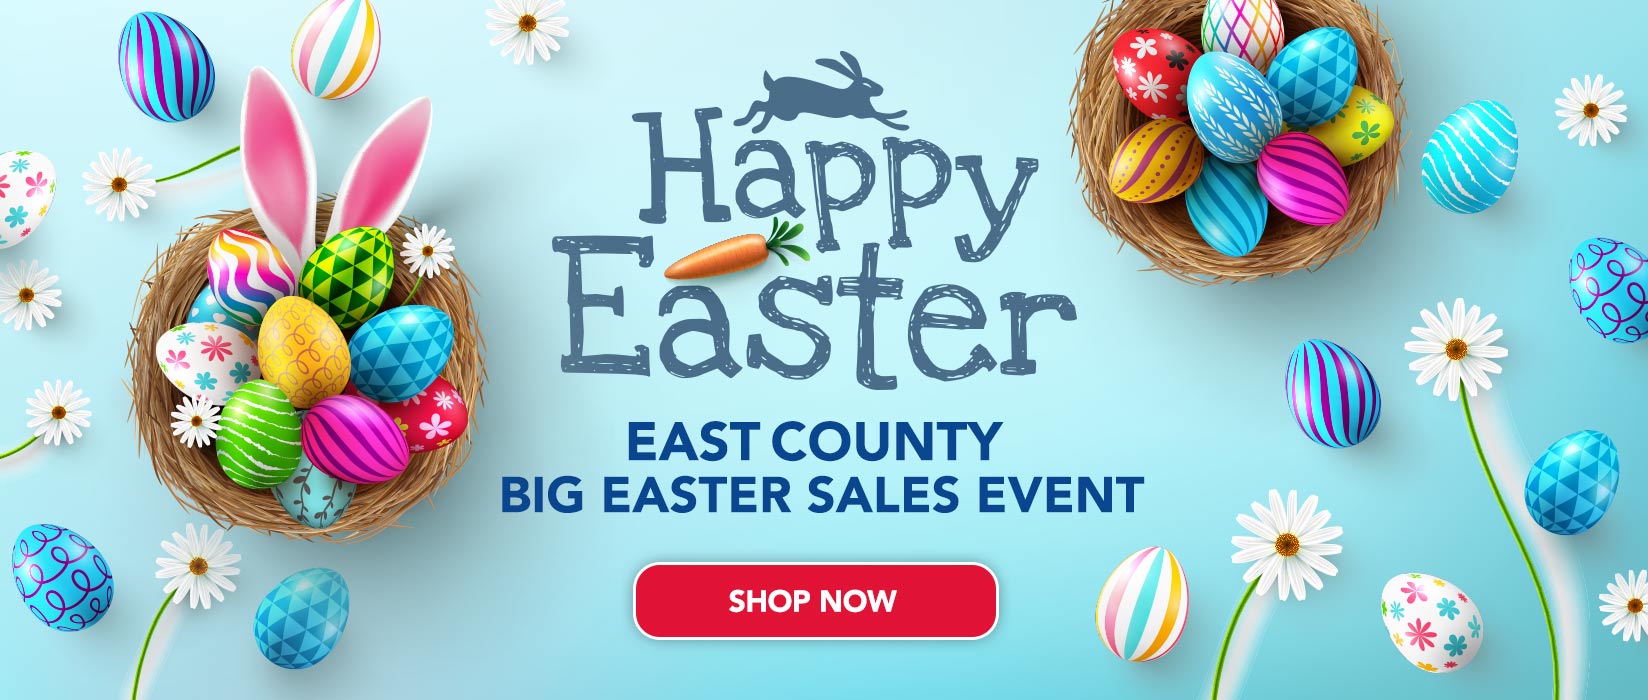 Big Easter Sales Event